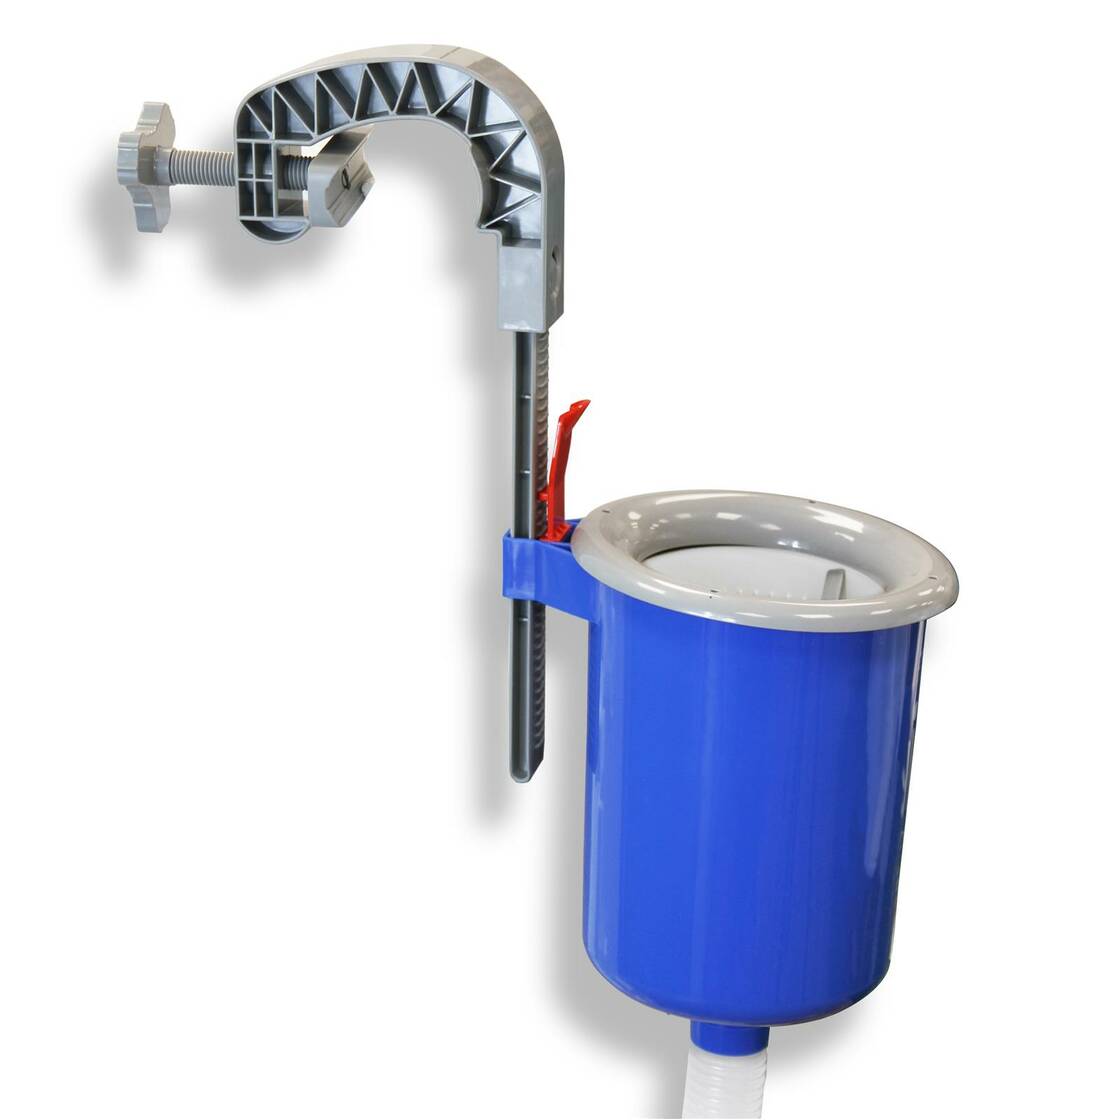 Einhängeskimmer für Framepool, quick up pool und Aufstellbecken für Filteranlagen von 2-5 m³/h